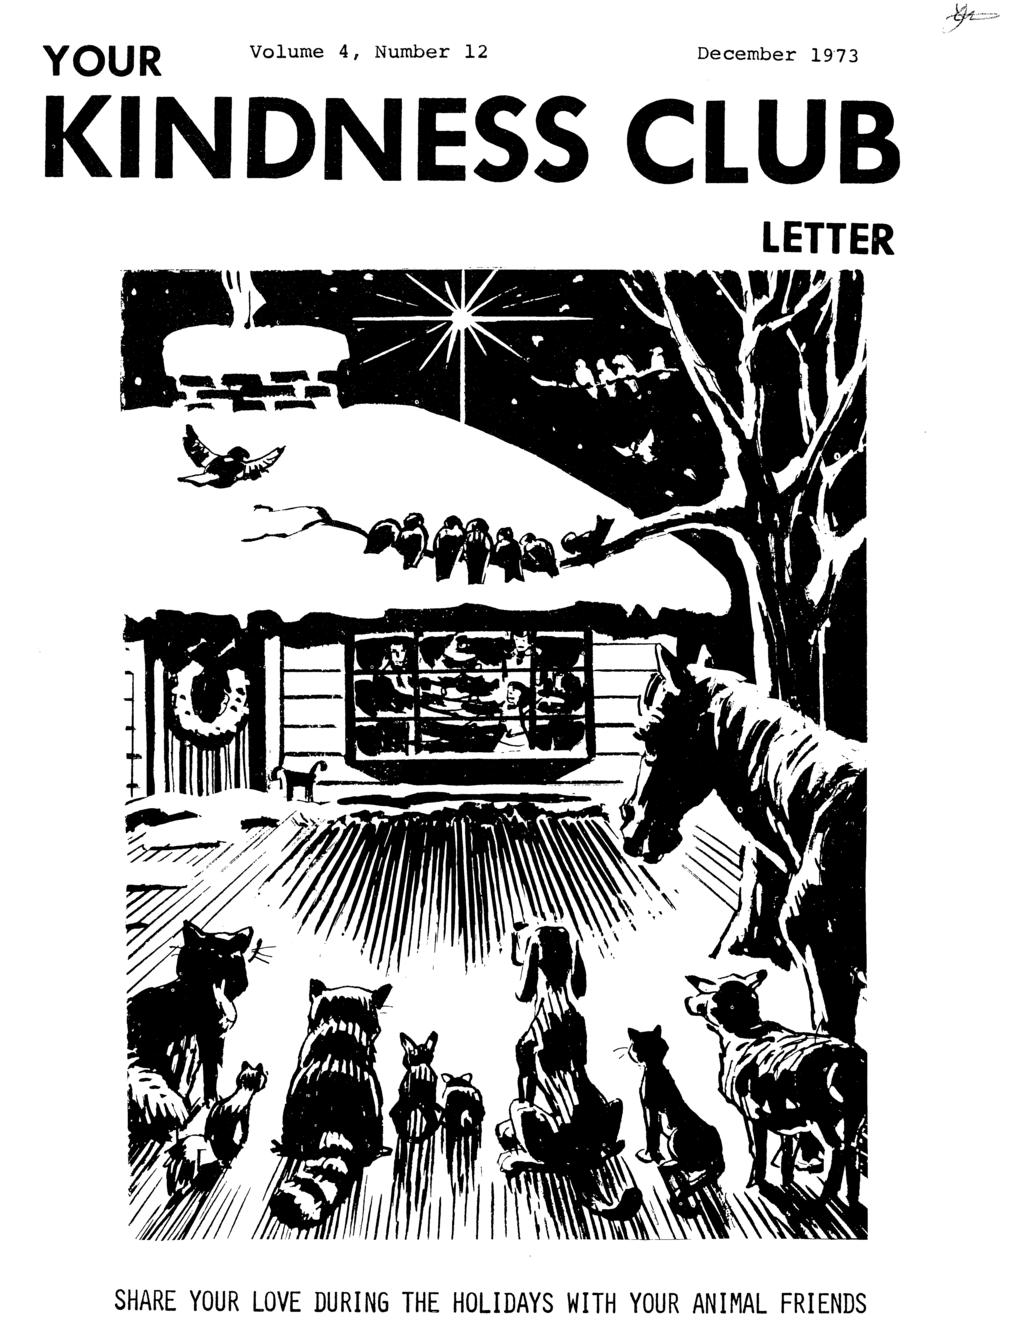 YOUR Volume 4, Number 12 December 1973 KINDNESS CLUB LETTER